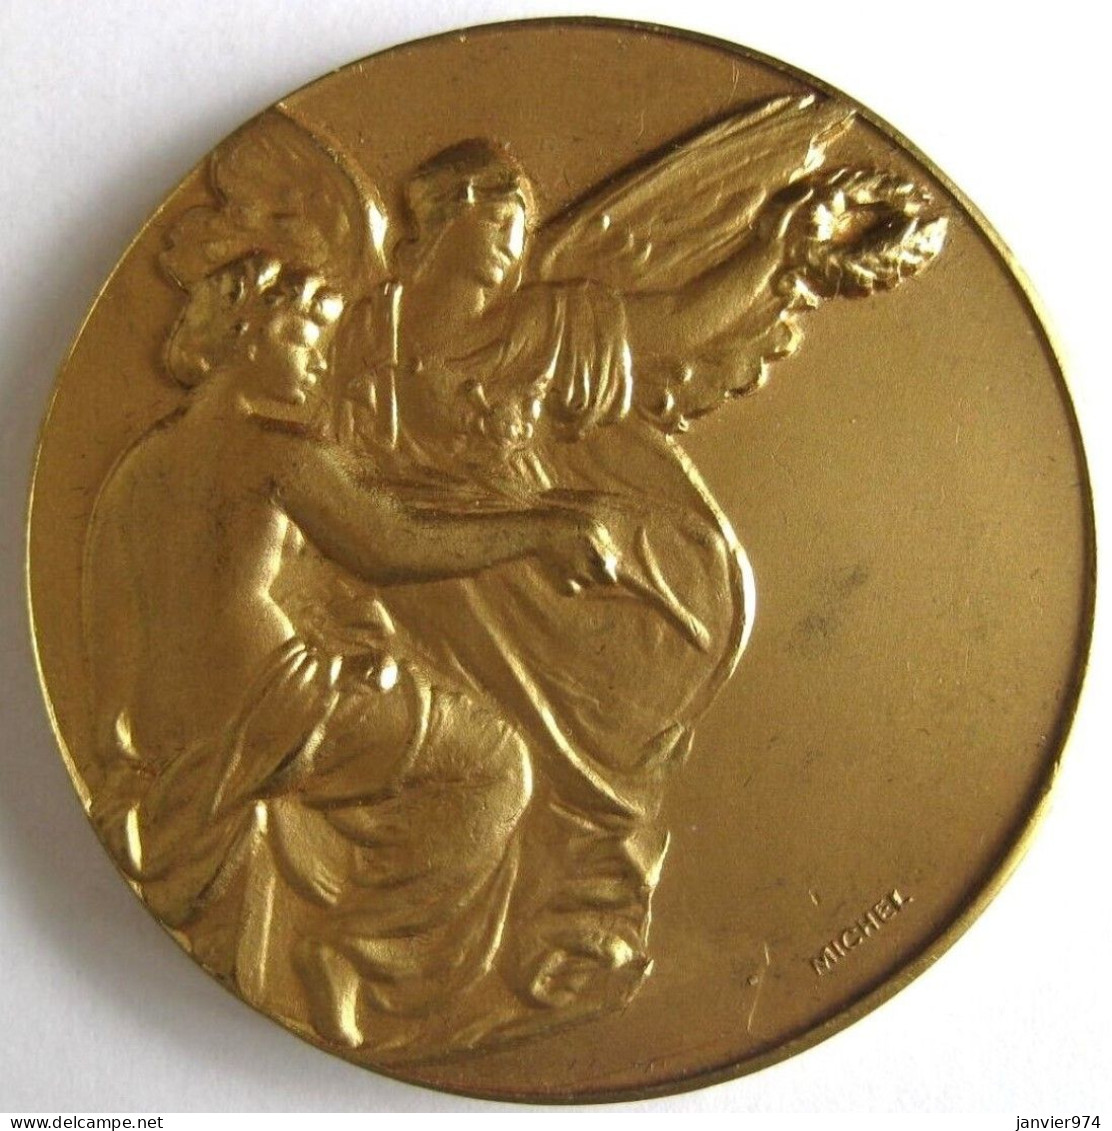 Médaille En Bronze Dorée,  IXe Salon International Des Inventeurs Bruxelles 1960 Par Michel - Autres & Non Classés